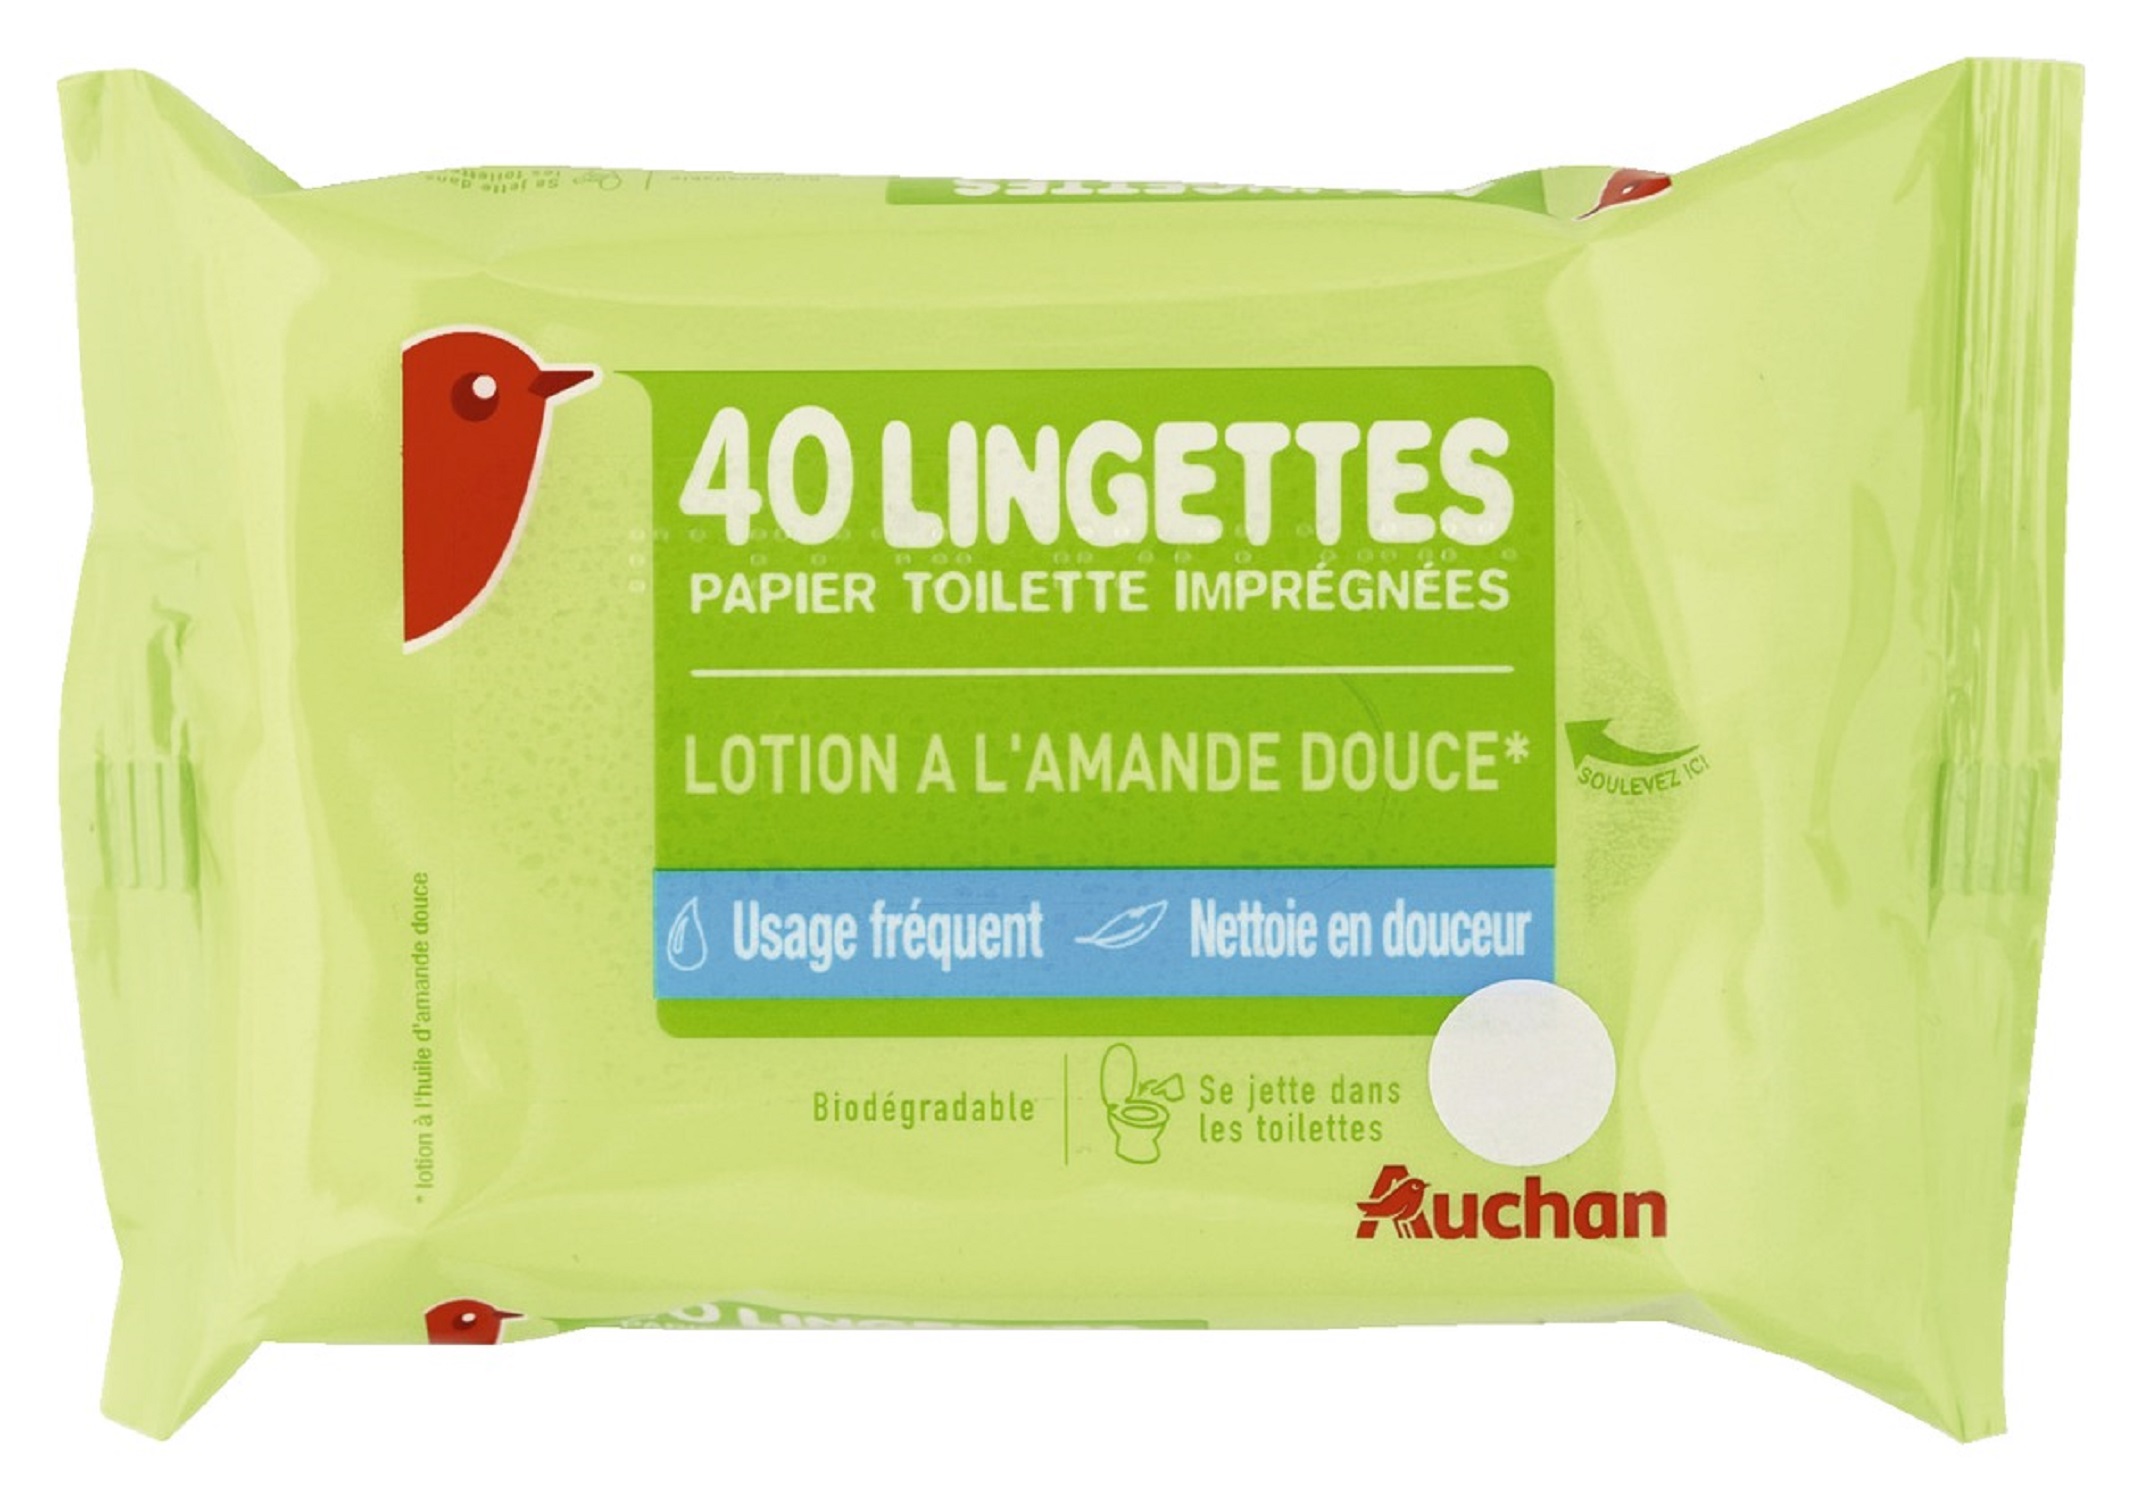 AUCHAN Lingettes papier toilette biodégradable amande douce 40 lingettes  pas cher 